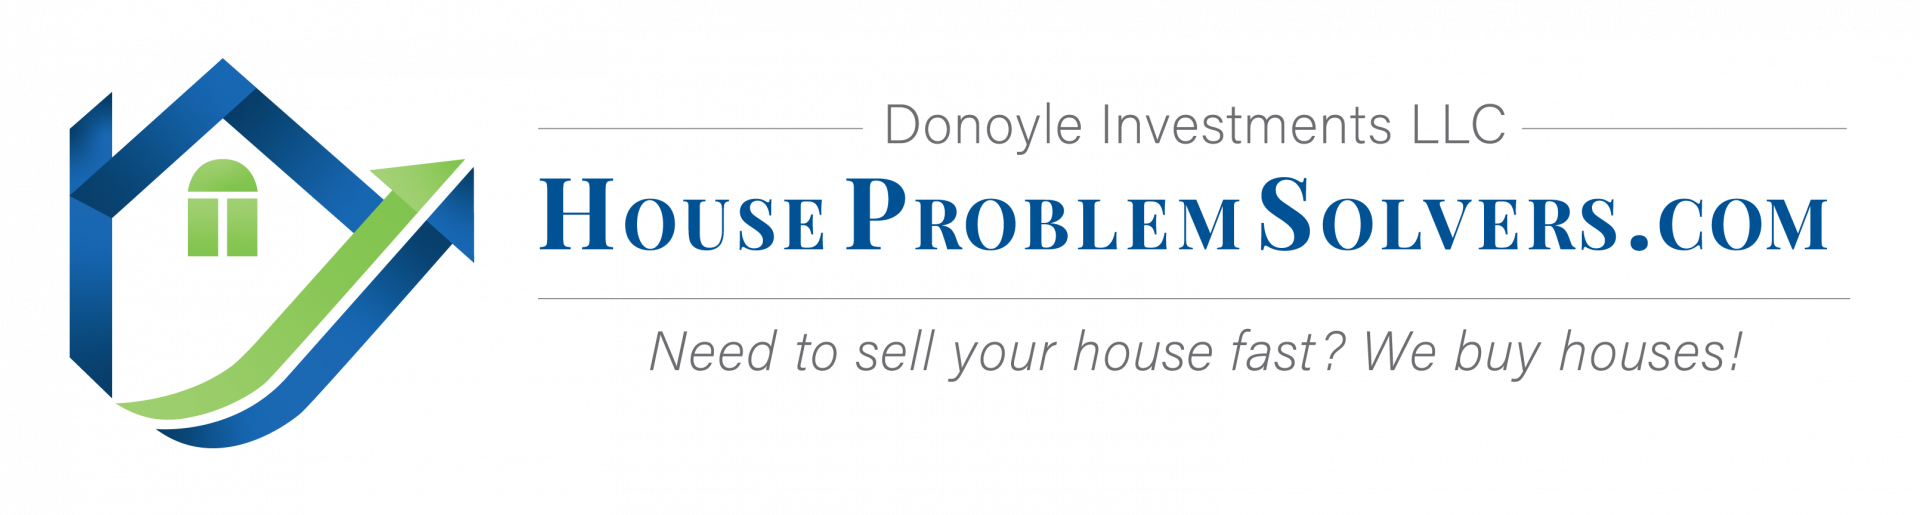 HouseProblemSolvers.com logo